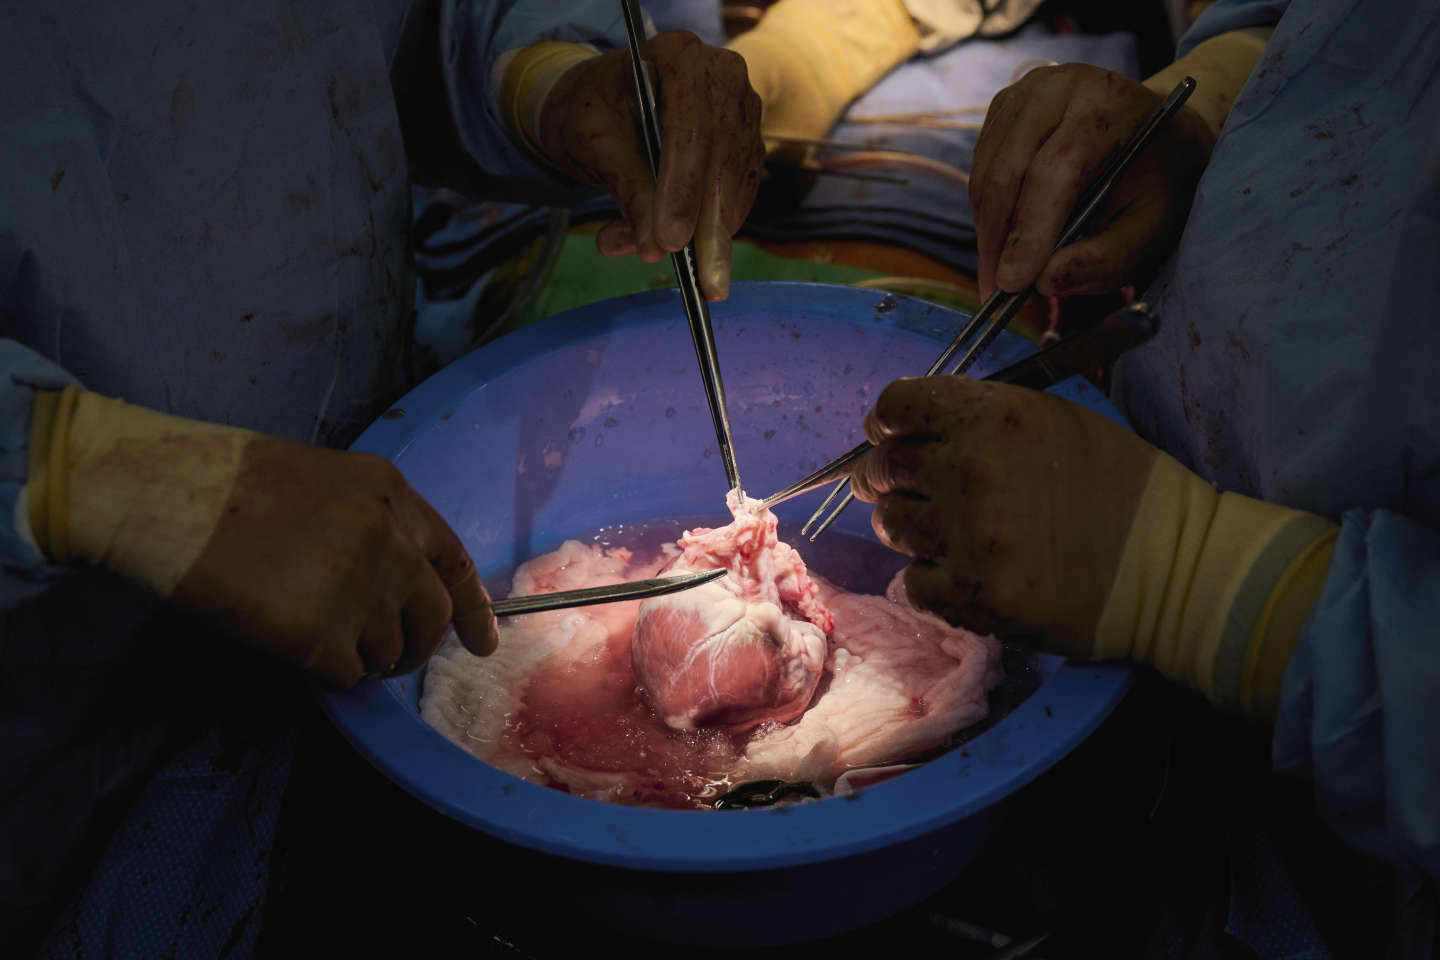 Médecine : des fonctions cellulaires restaurées chez des cochons, une heure après la mort